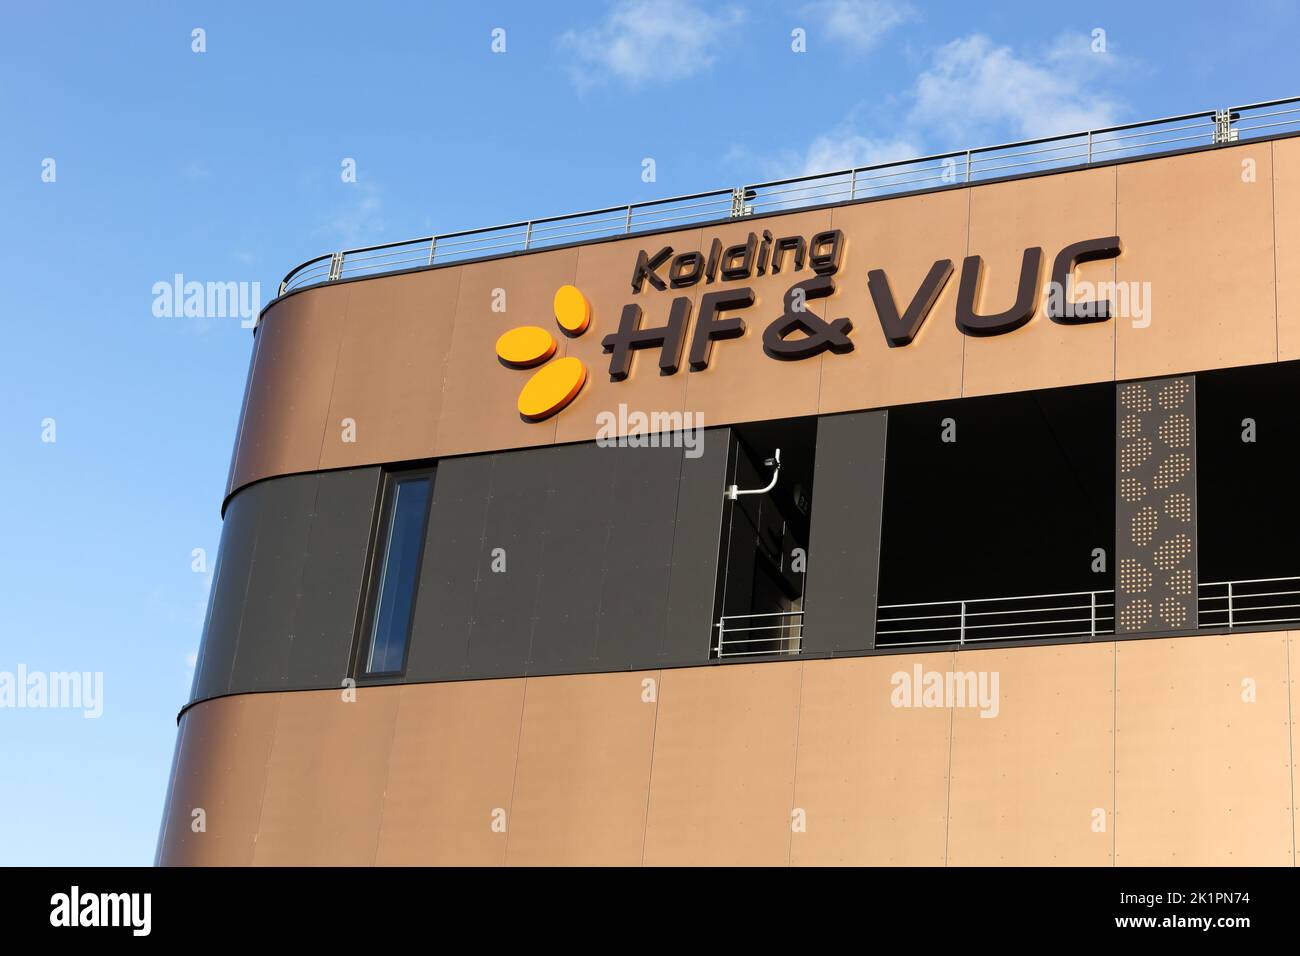 Kolding, Dinamarca - 28 de febrero de 2016: Kolding HF y VUC es una escuela que ofrece un ambiente educativo para adultos Foto de stock